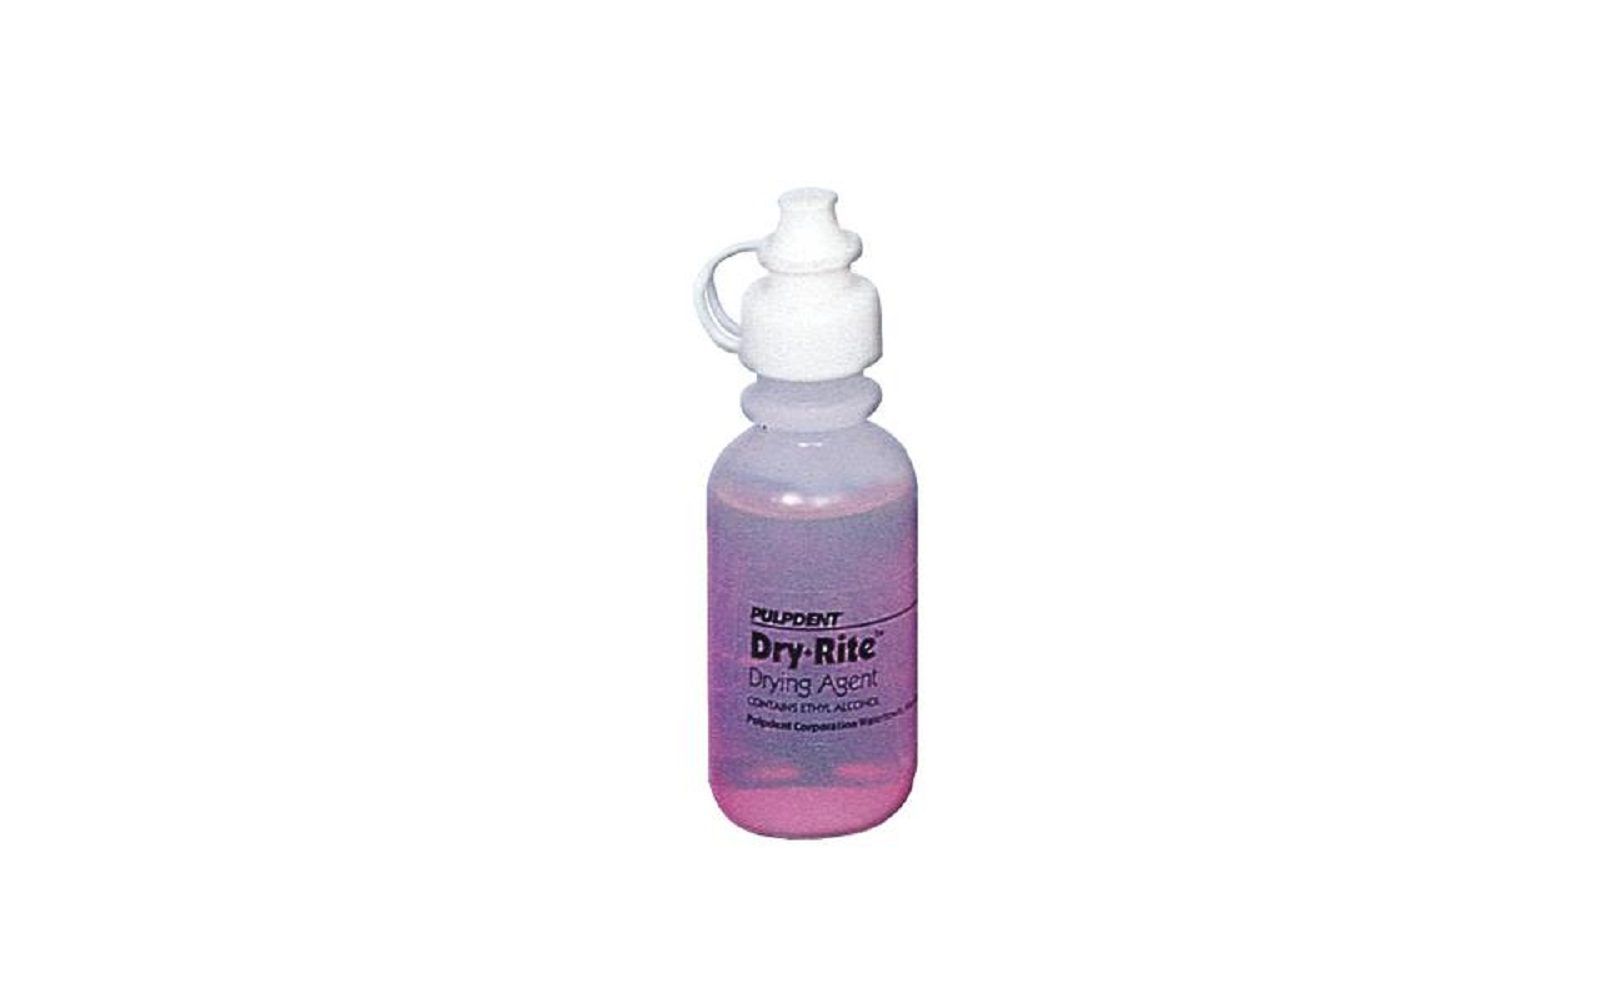 Dry-rite drying agent, kit